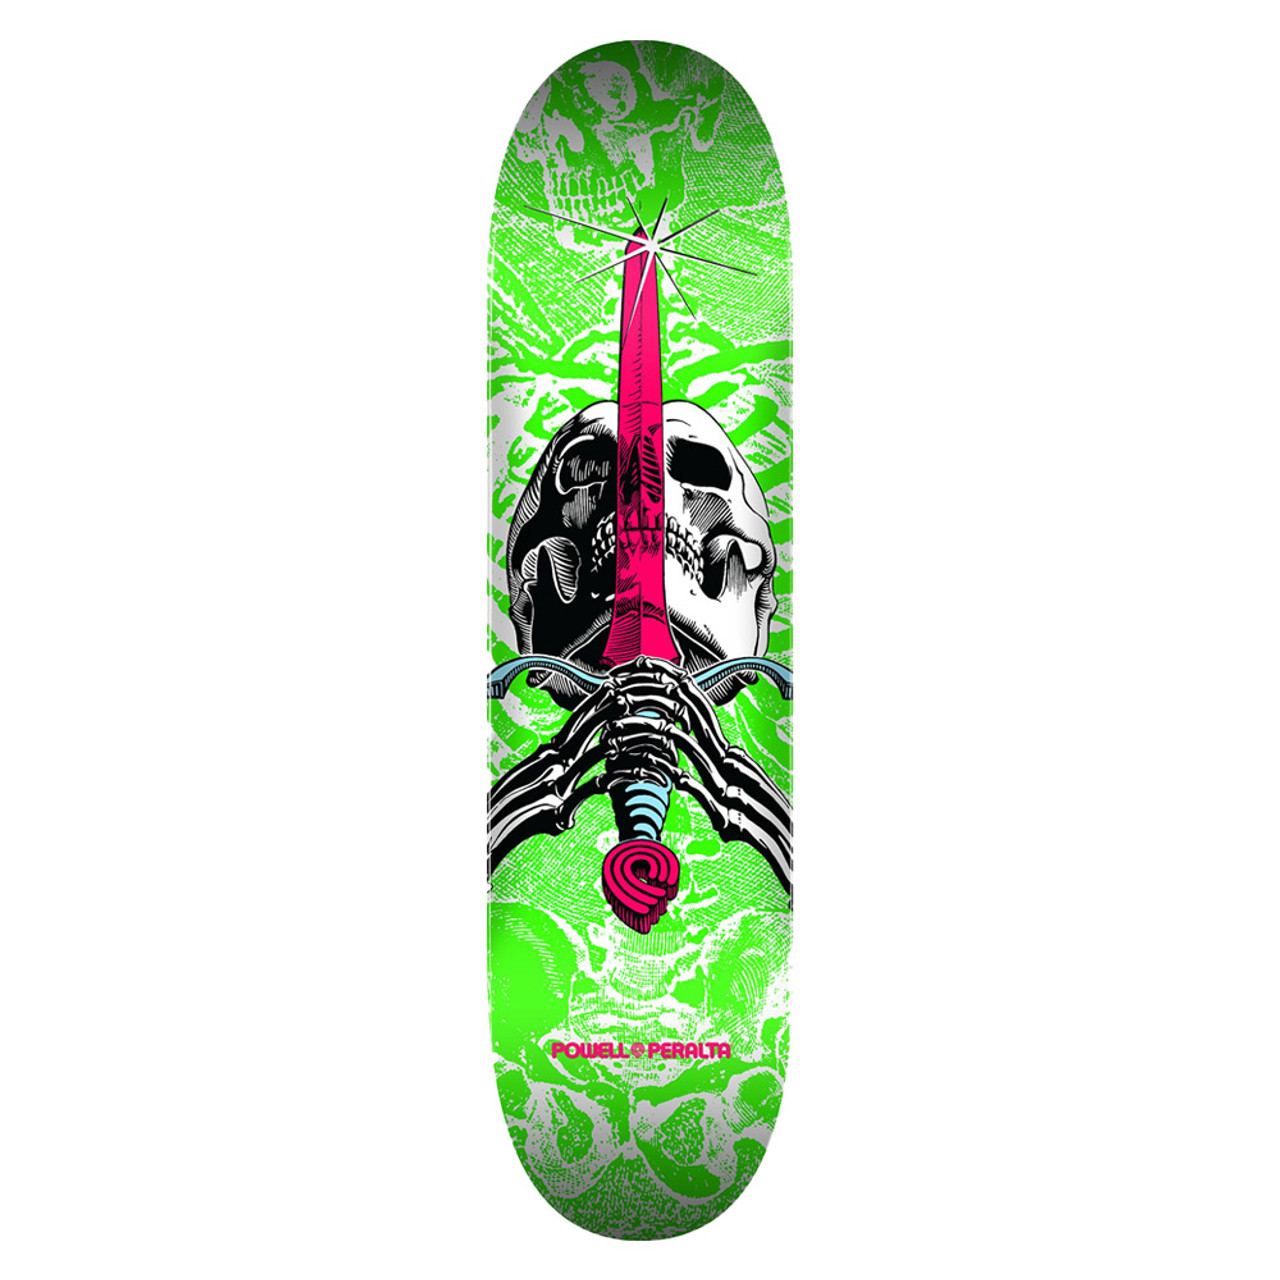 POWELL PERALTA Skull & Sword White/Green Skateboard Deck 7.5